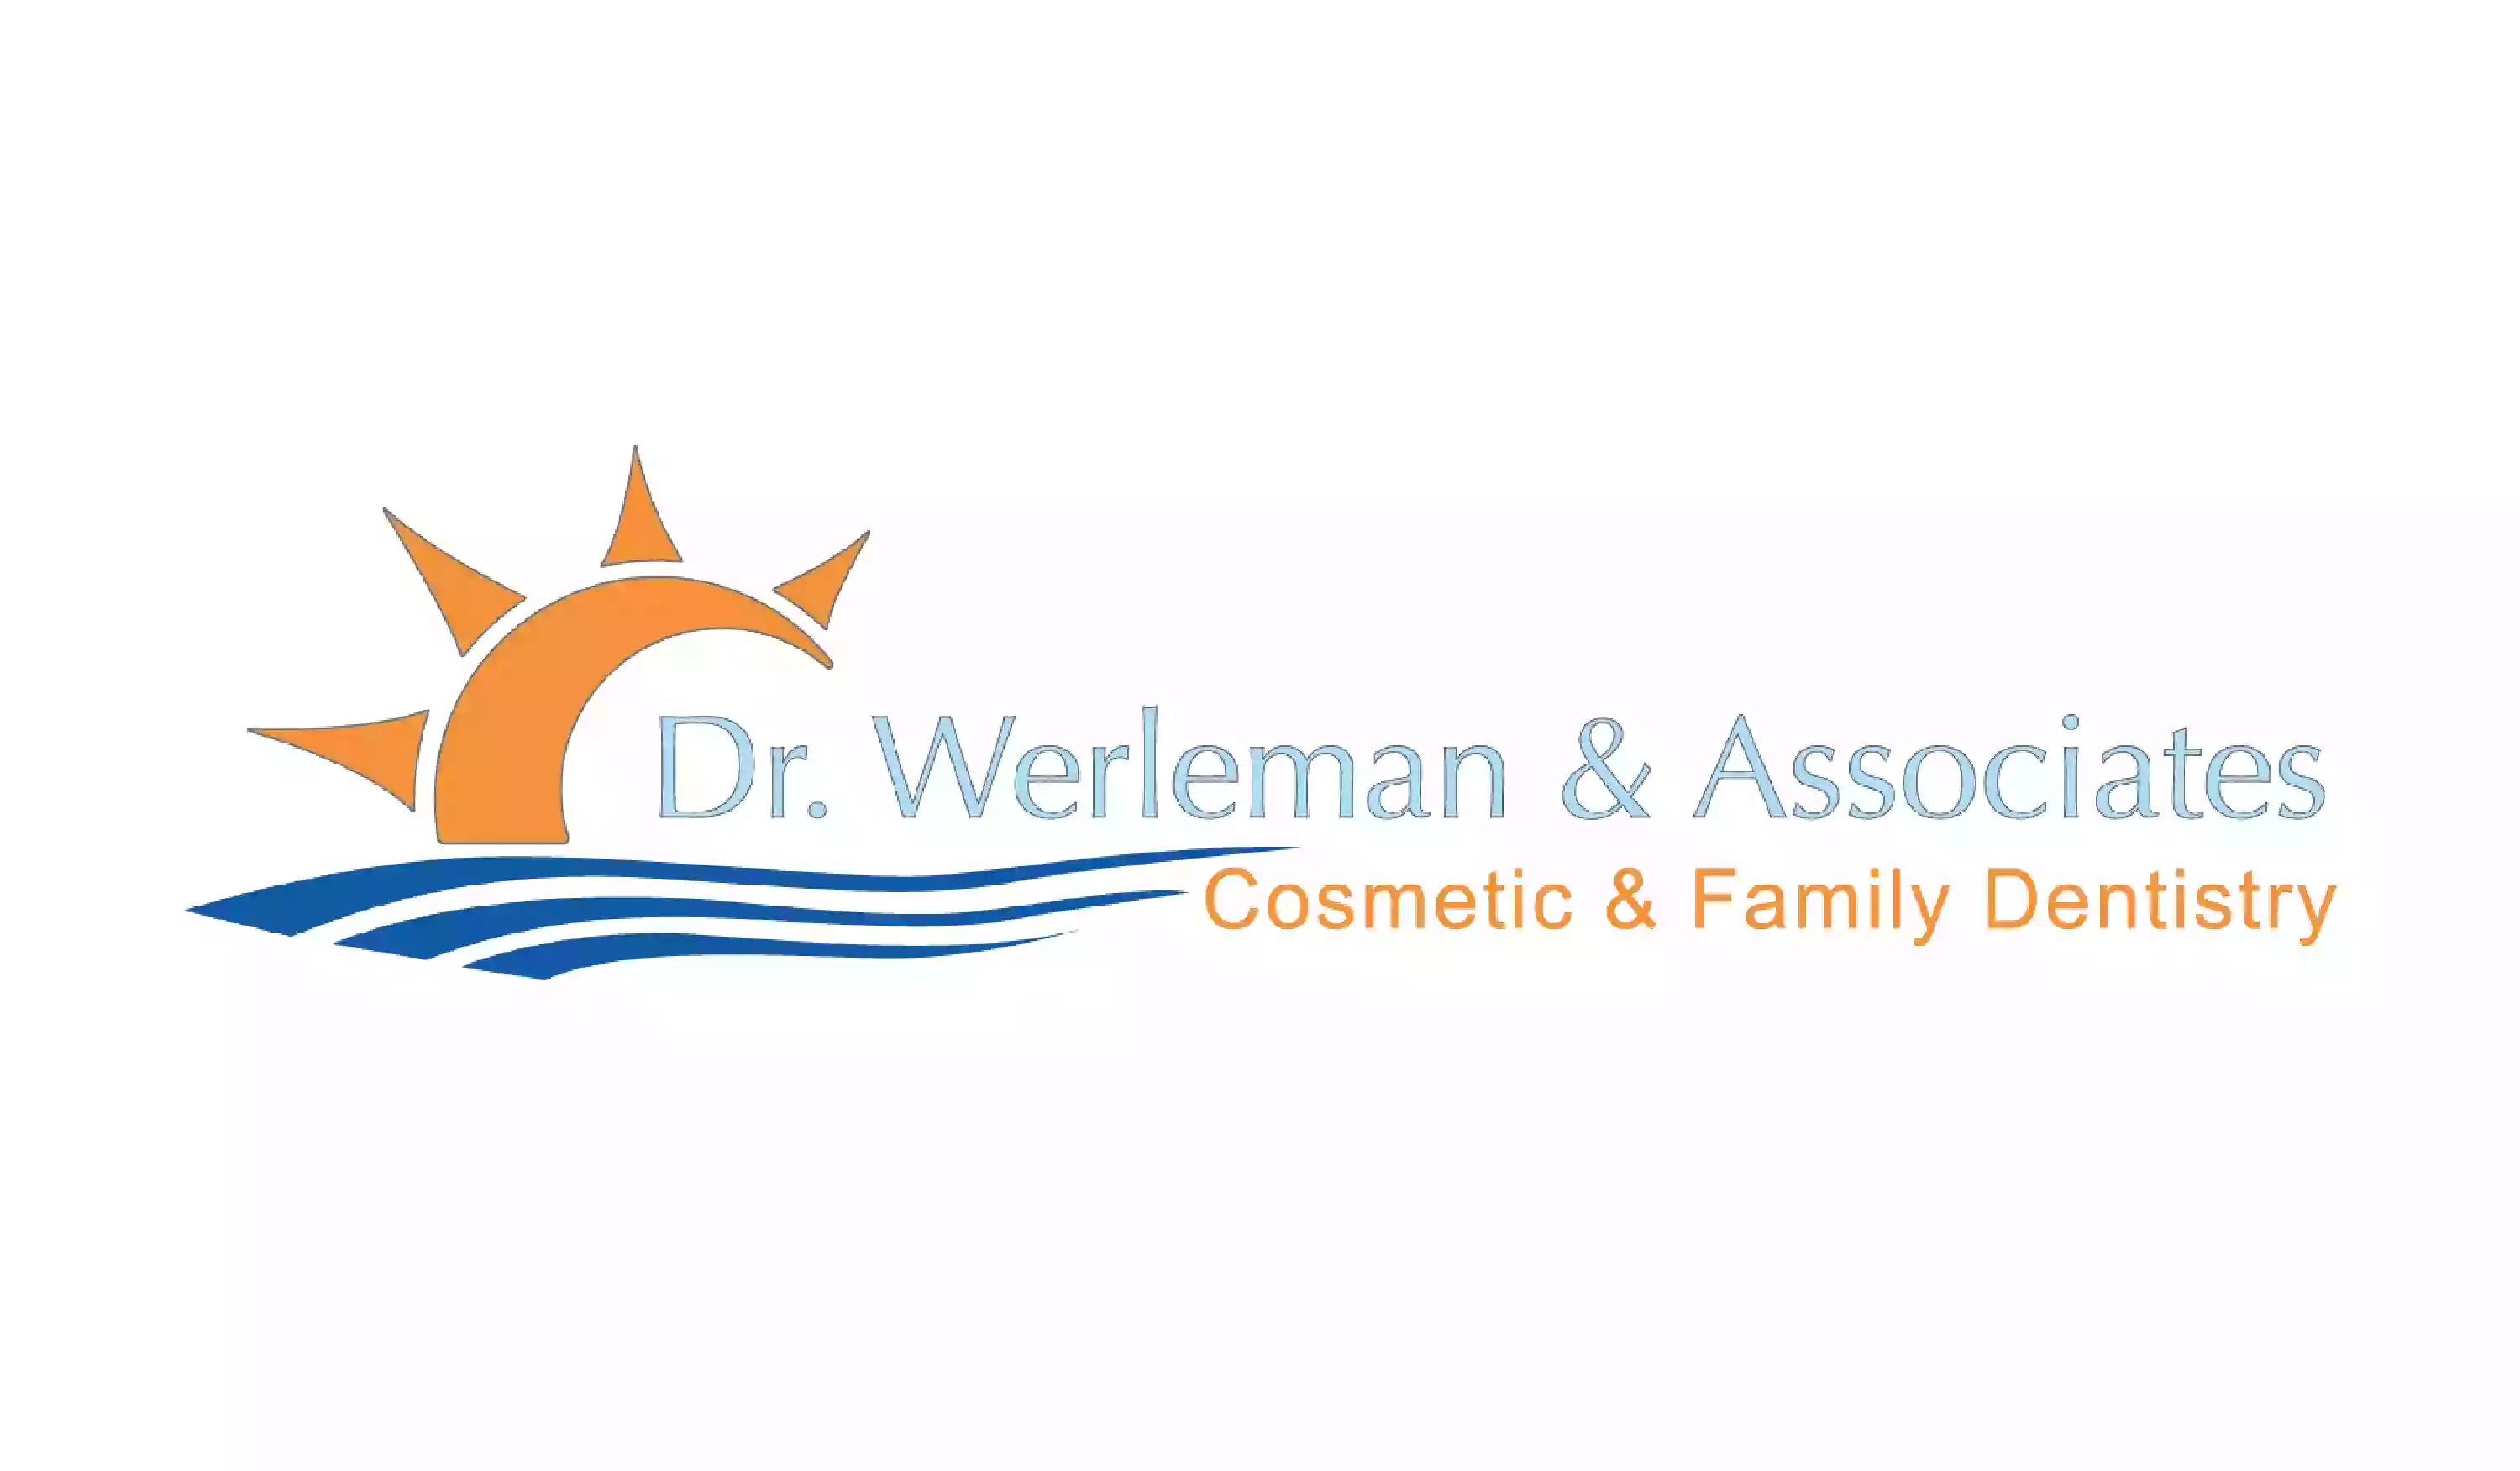 Dr. Werleman & Associates